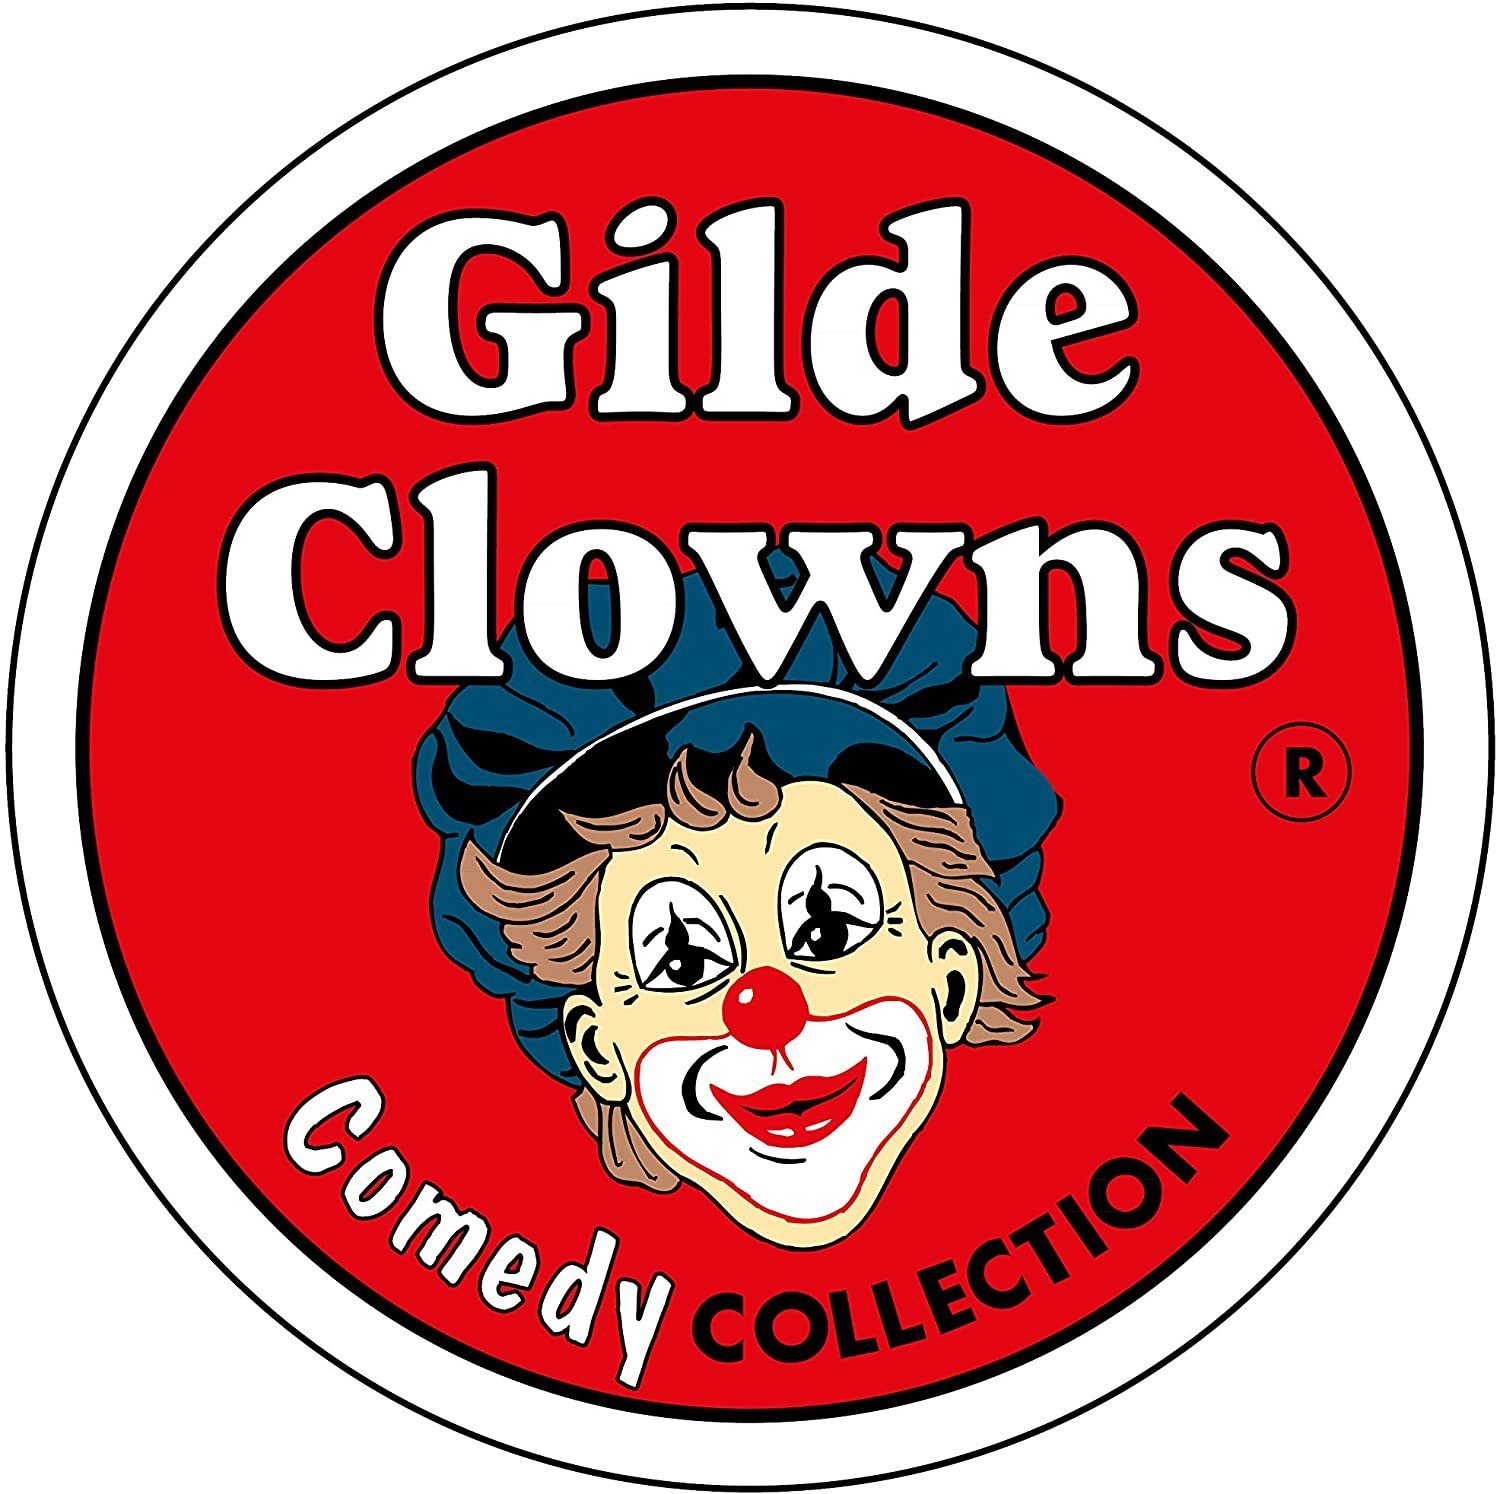 Indoor Dekofigur - Indoor Clown Gildeclowns Sammelfigur - Salute - GILDE Dekofigur